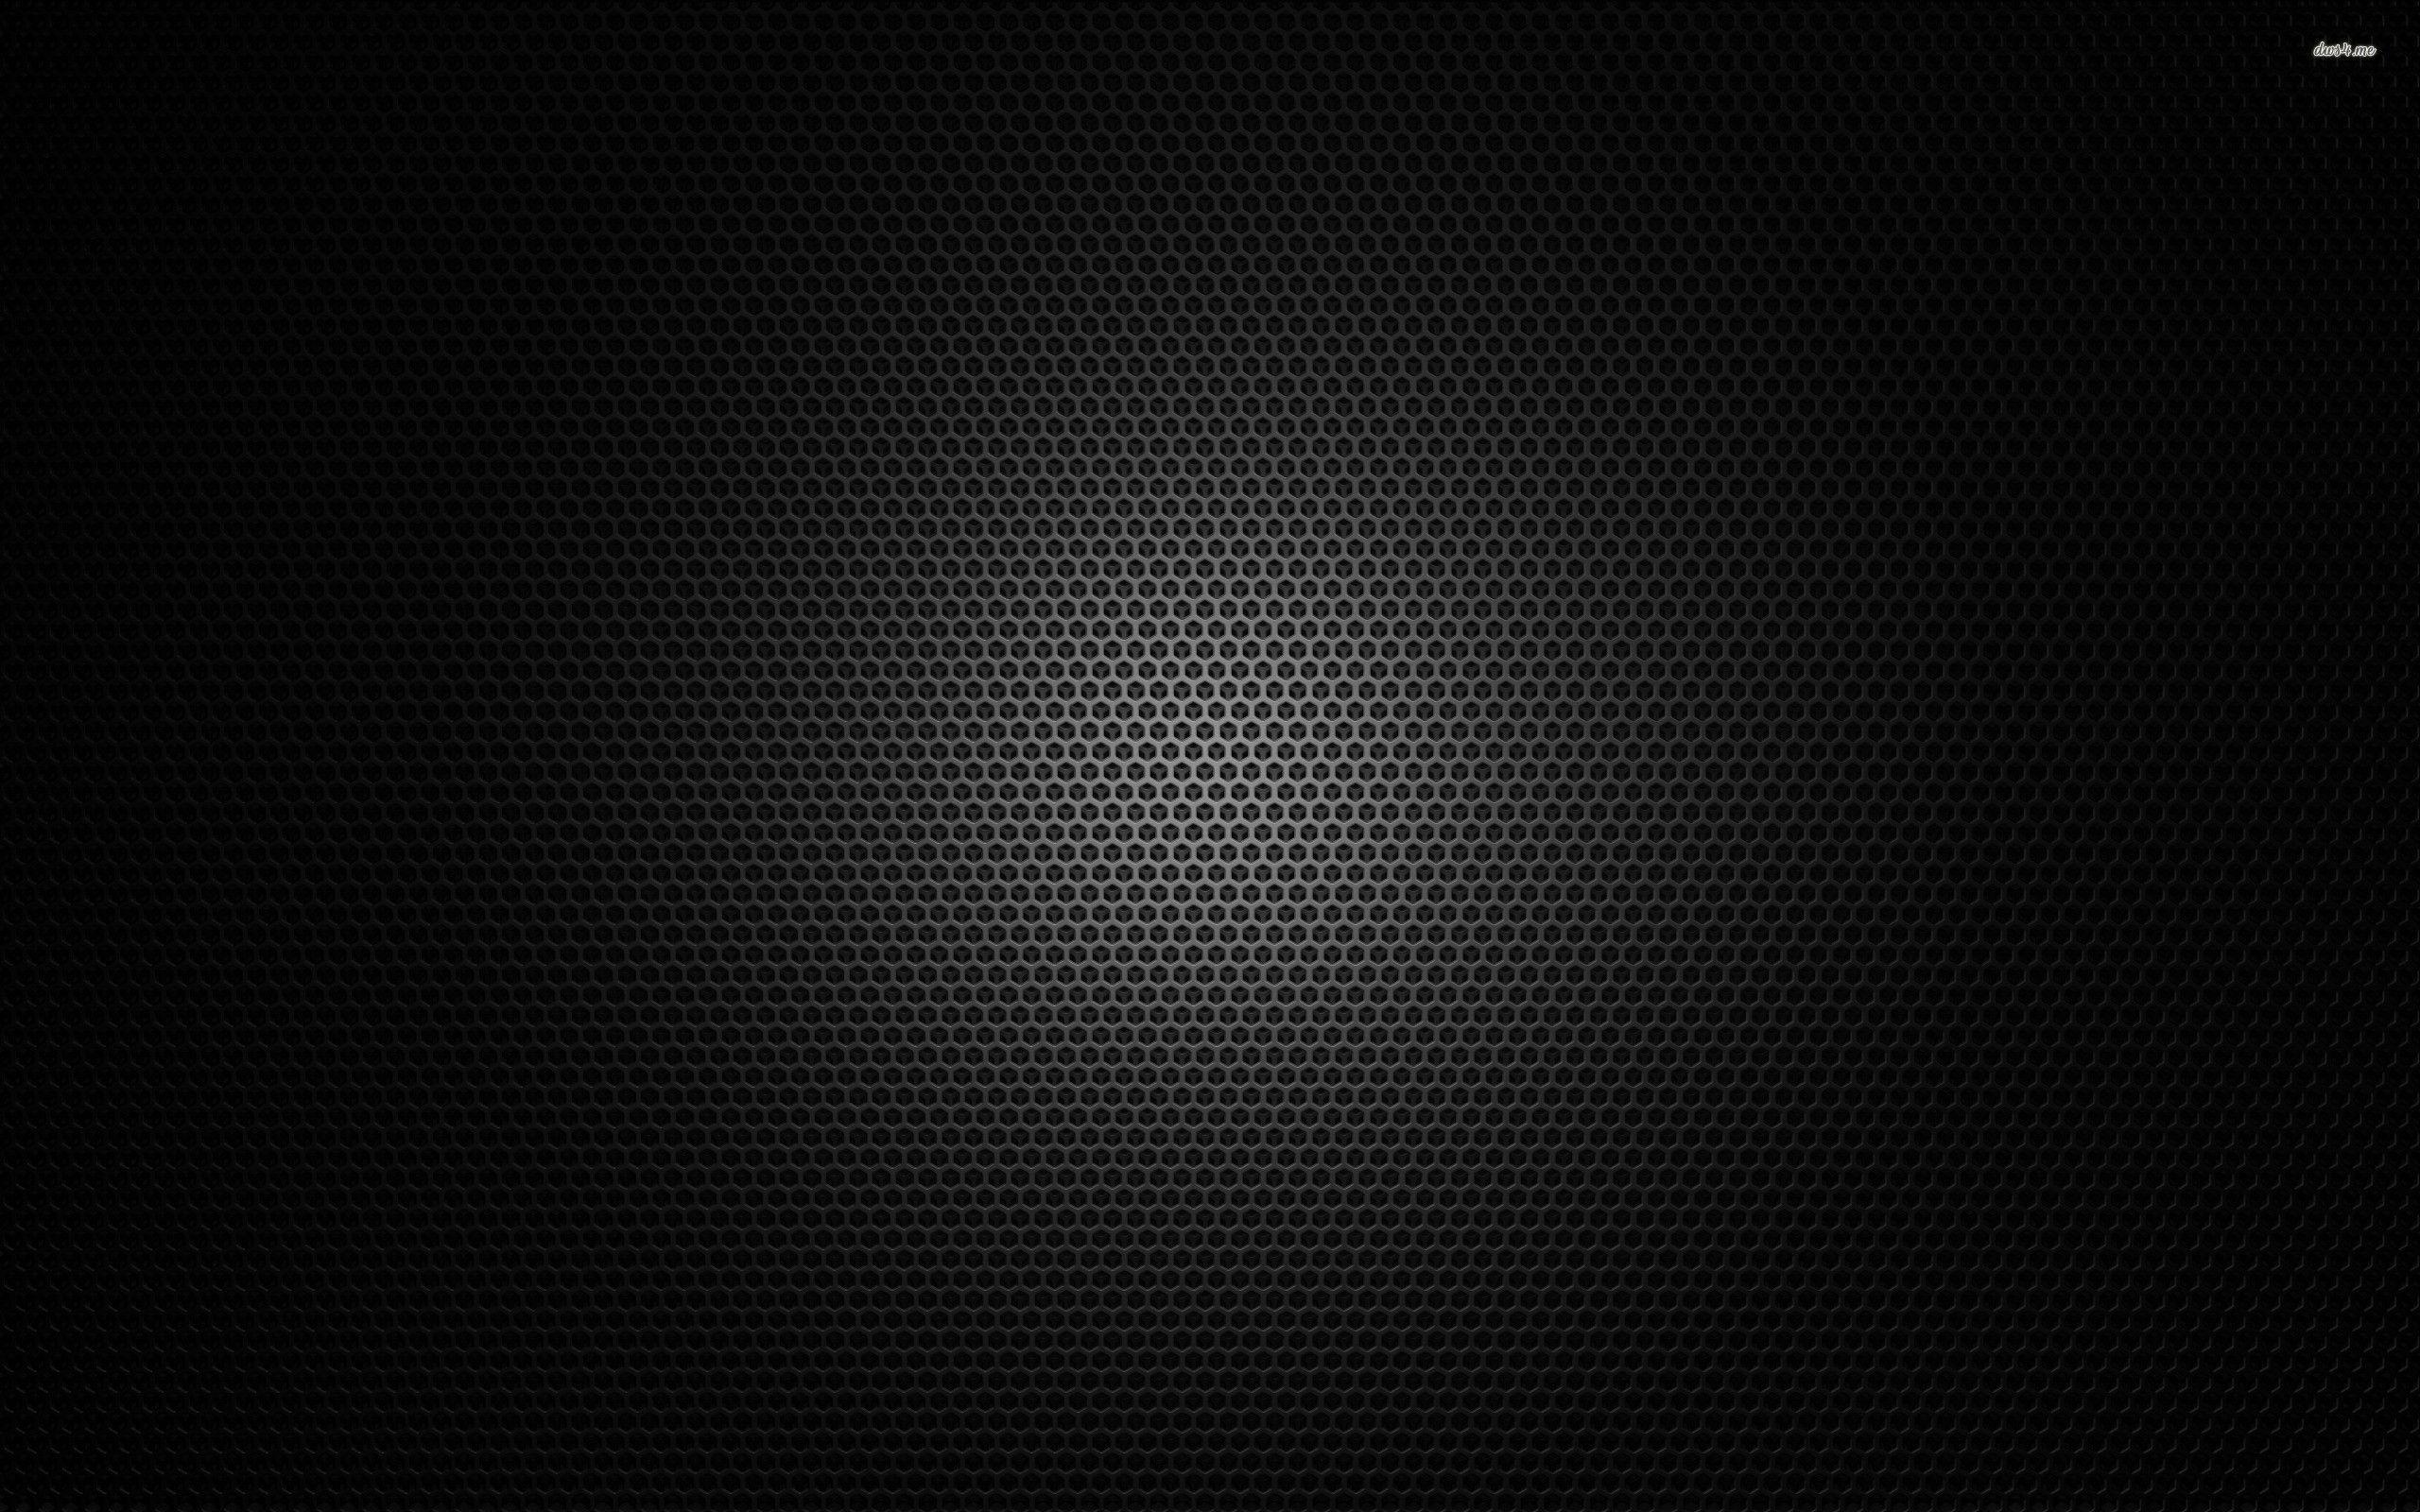 Carbon Fibre Wallpaper. Android